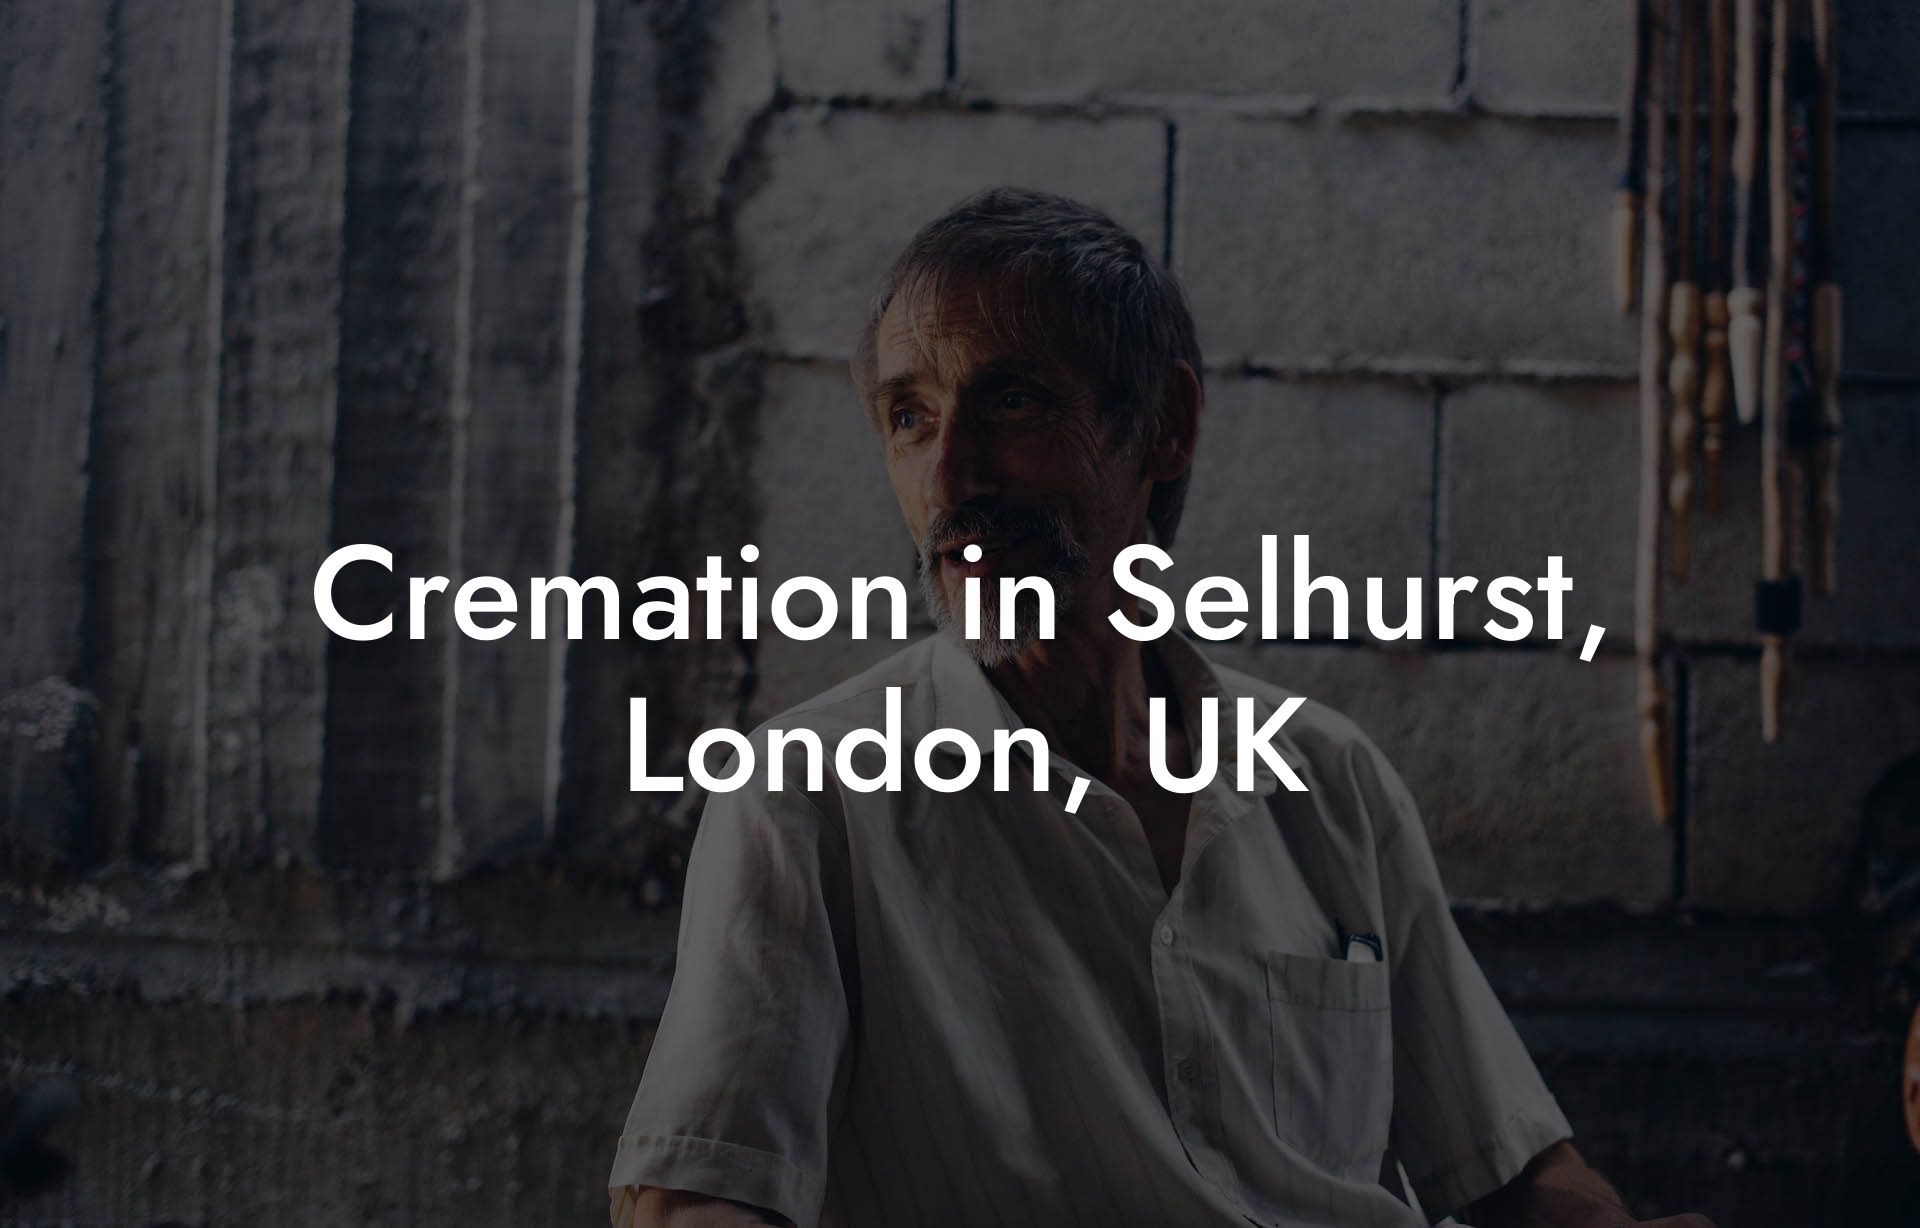 Cremation in Selhurst, London, UK